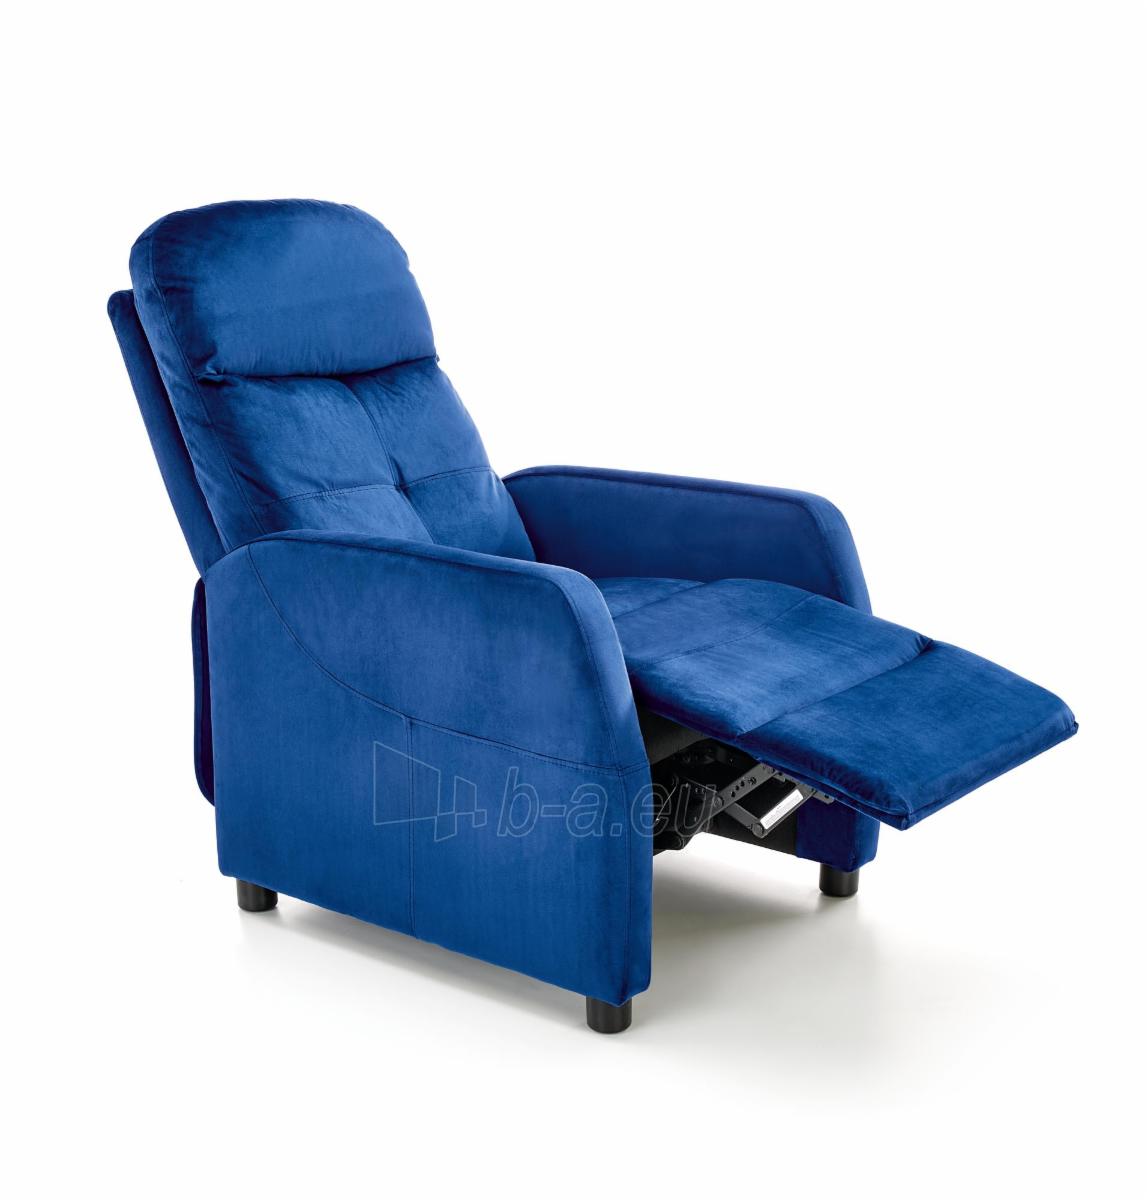 Fotelis FELIPE 2 mėlynos spalvos su išskleidžiamu pakoju paveikslėlis 10 iš 10